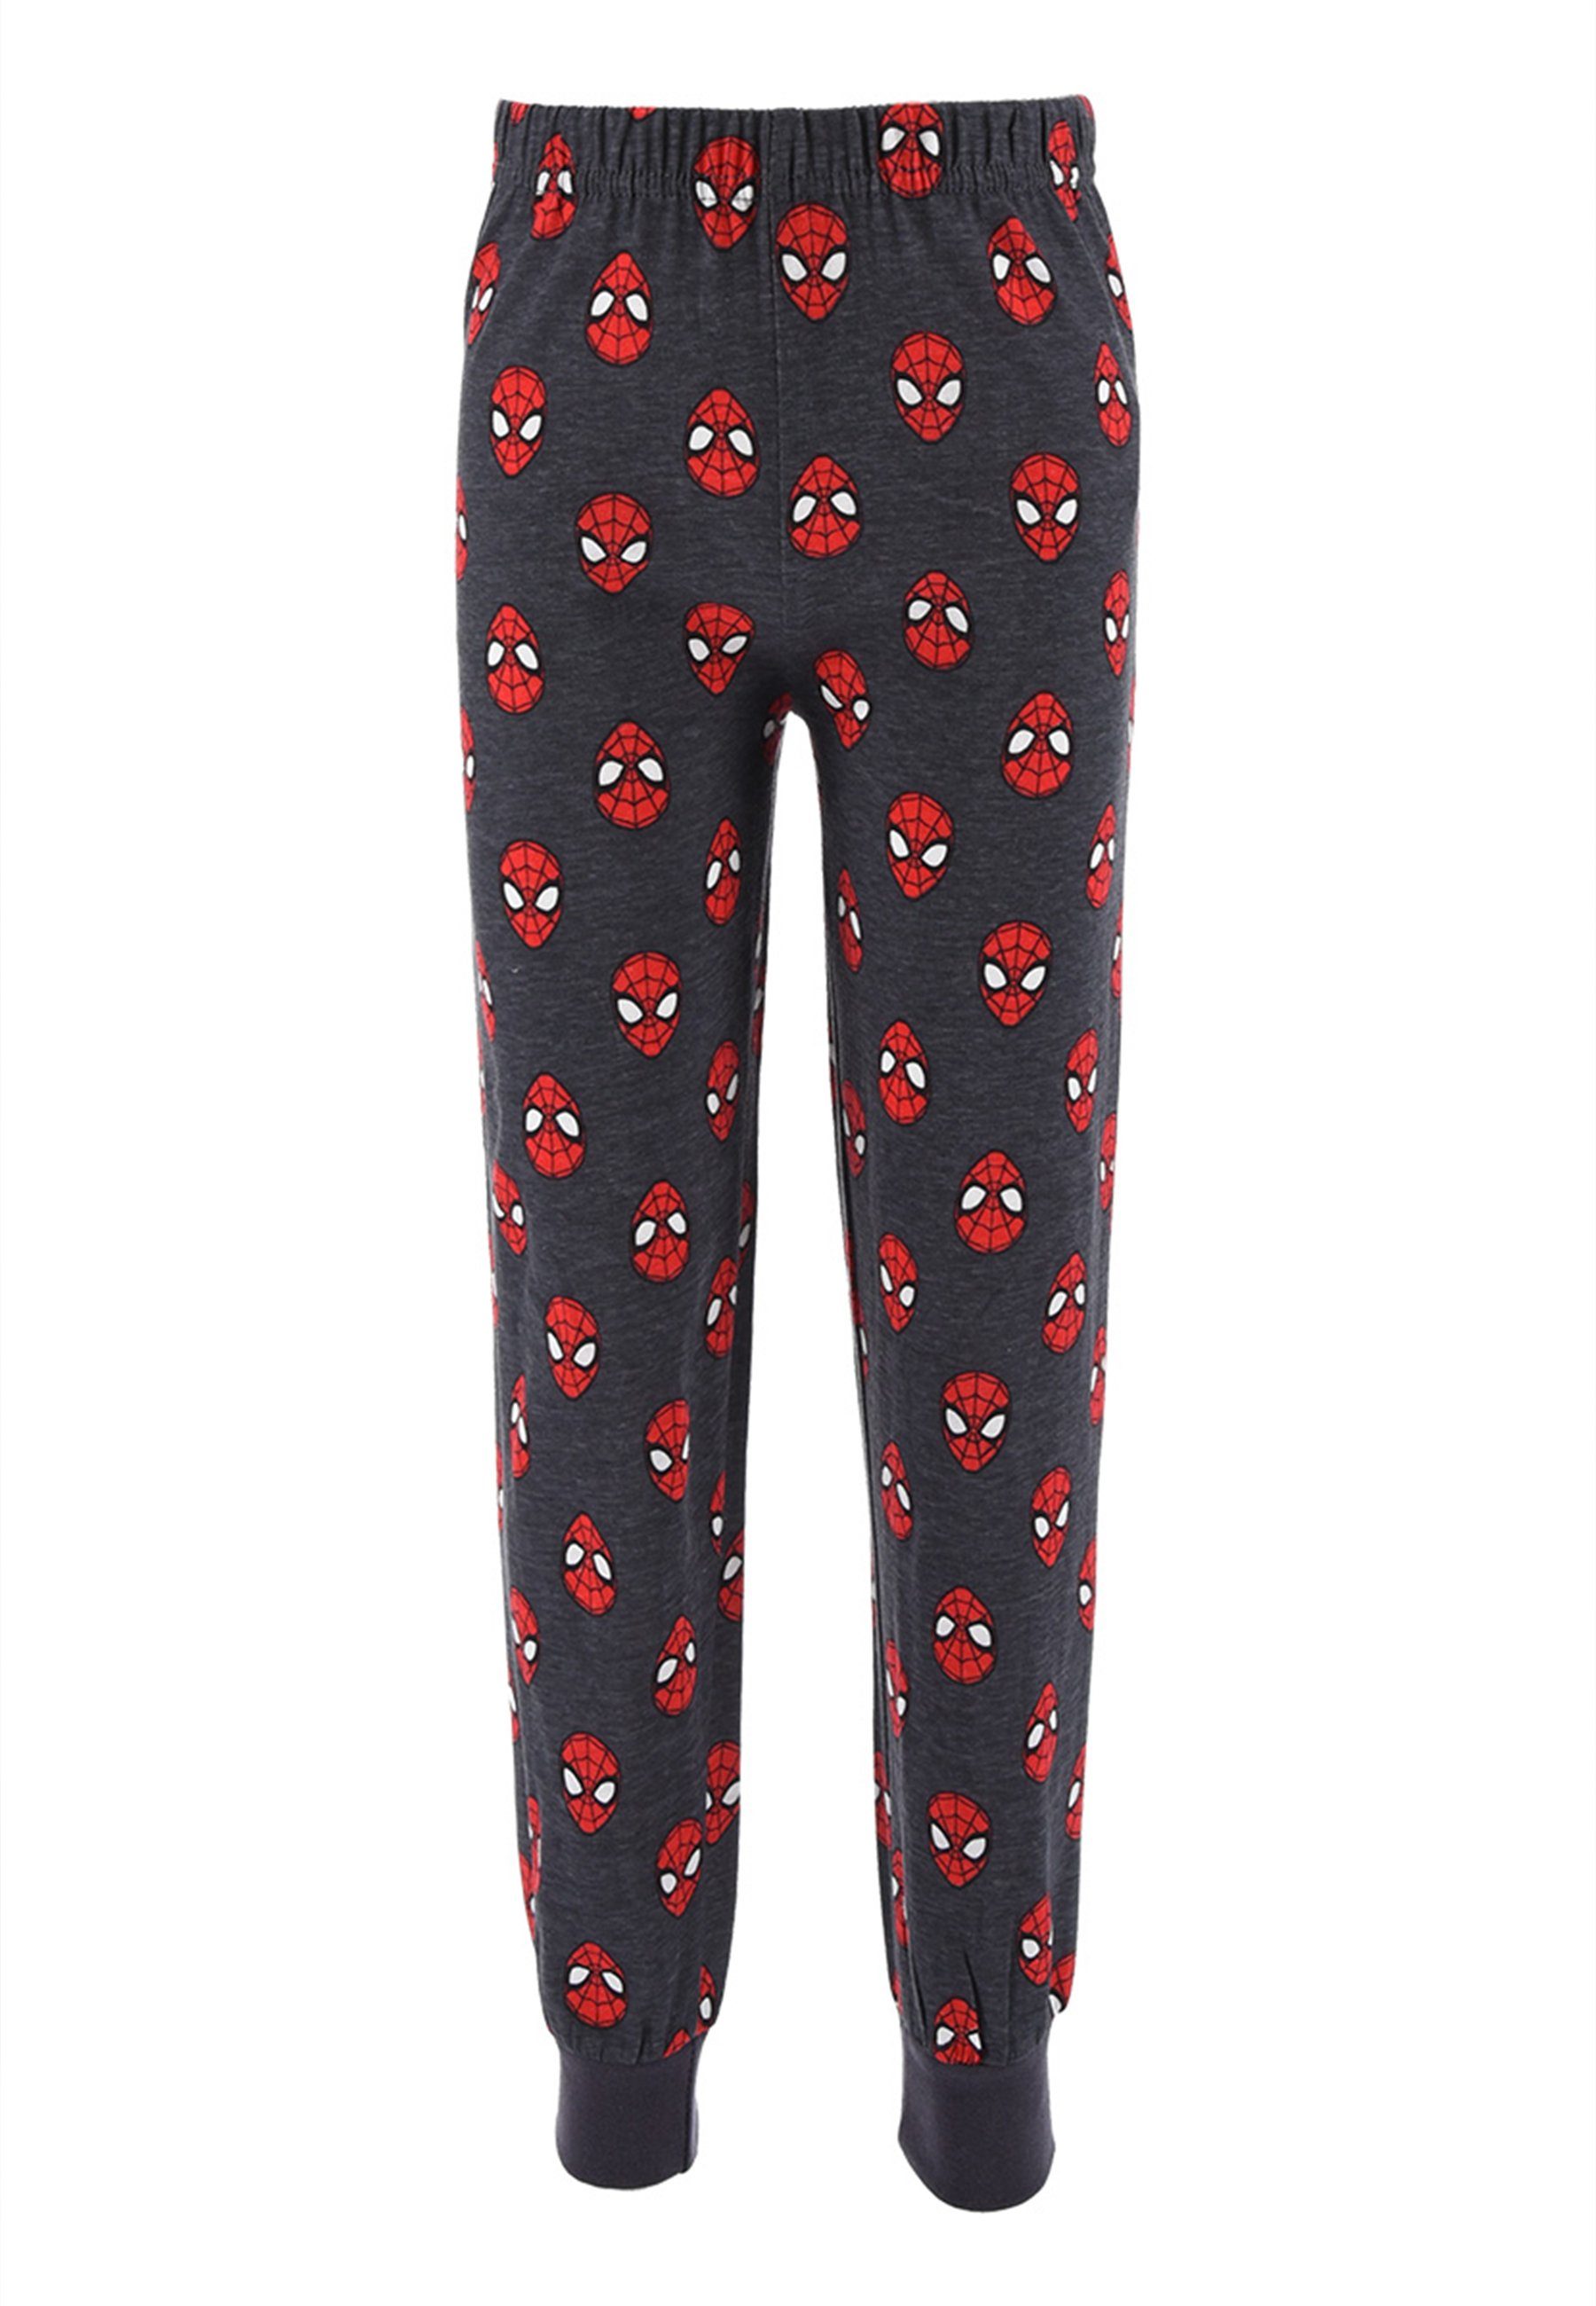 Schlafanzug Kinder Jungen Pyjama Rot Spiderman (2 langarm tlg) Nachtwäsche